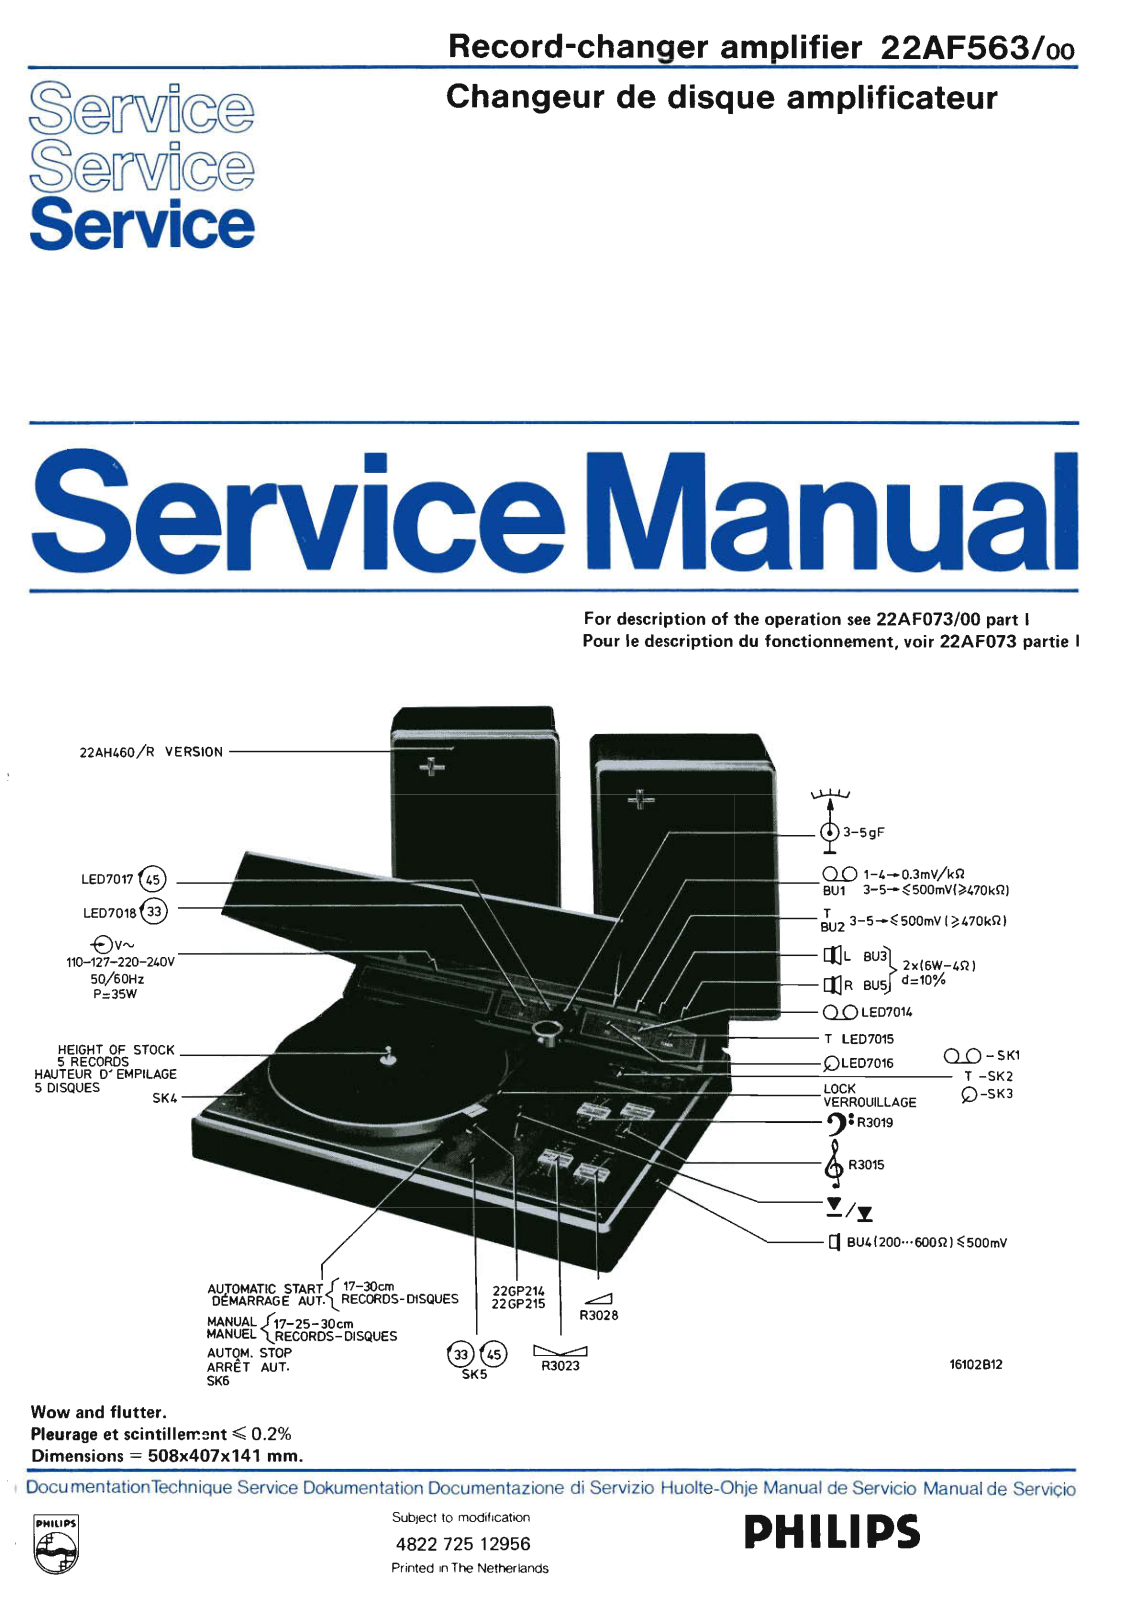 Philips AF-563 Service Manual